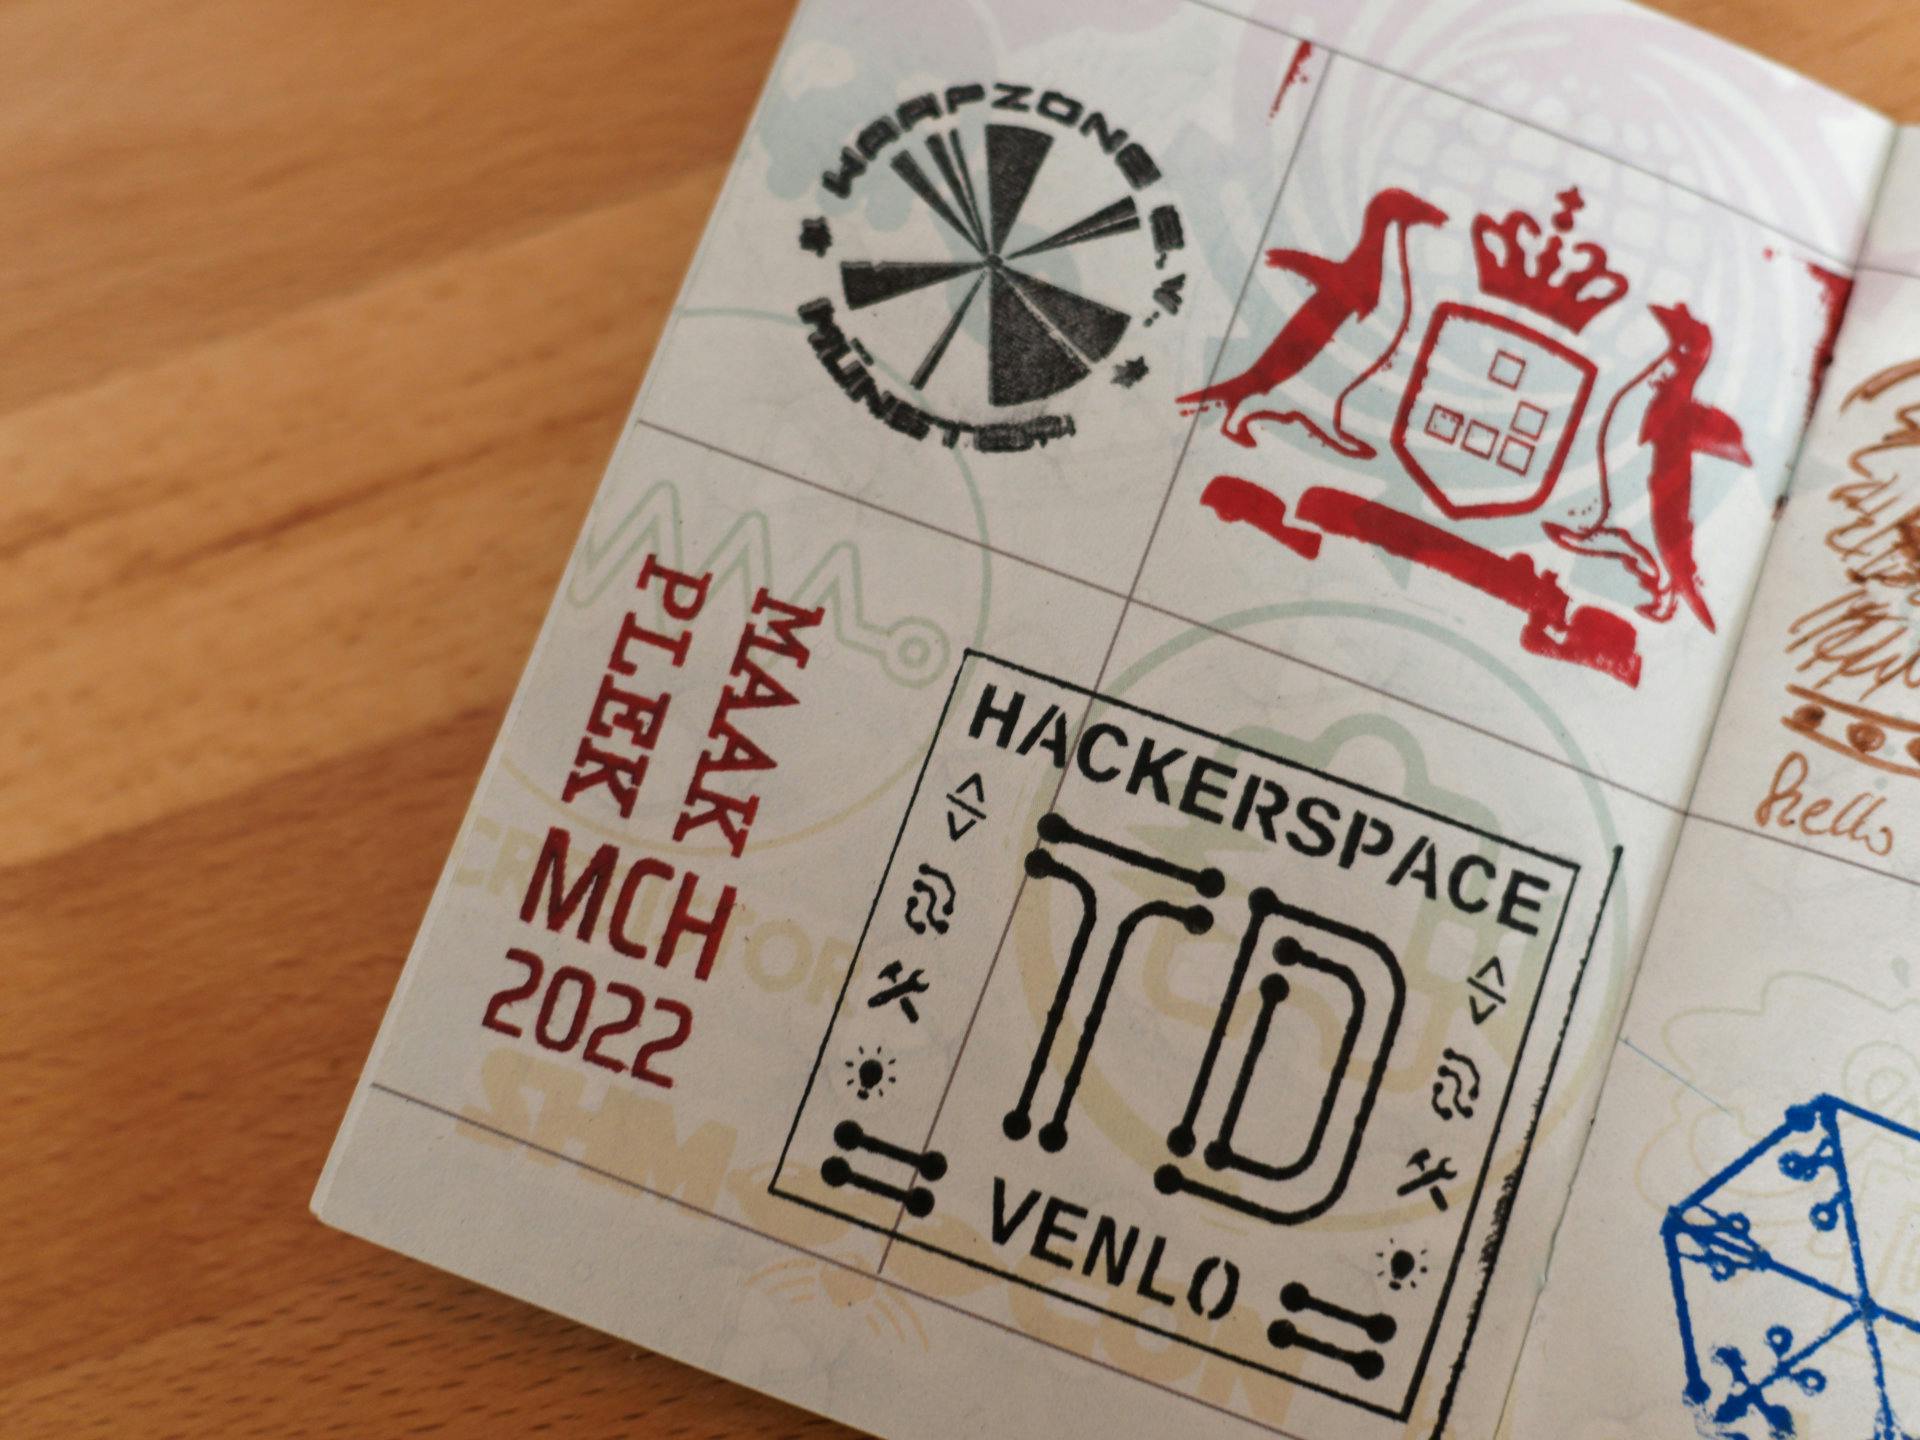 Dutch Stamps in Hackerspace Passport